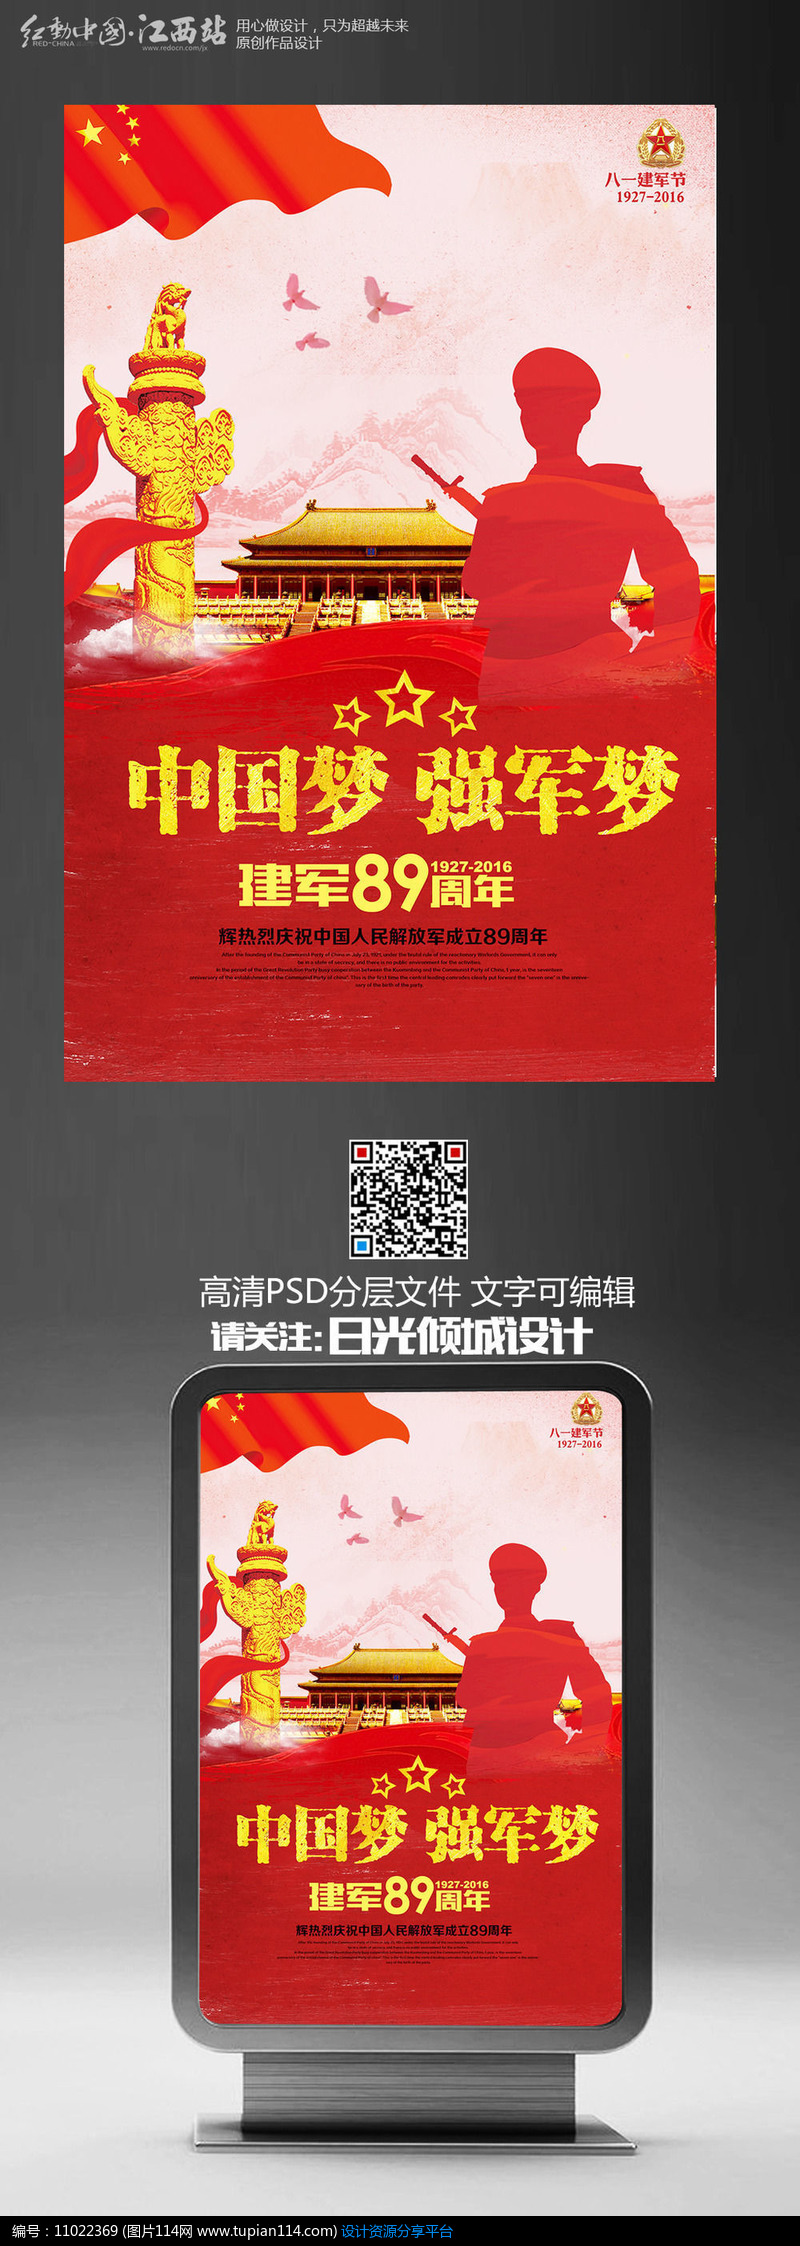 [原创] 红色创意八一建军节宣传海报设计